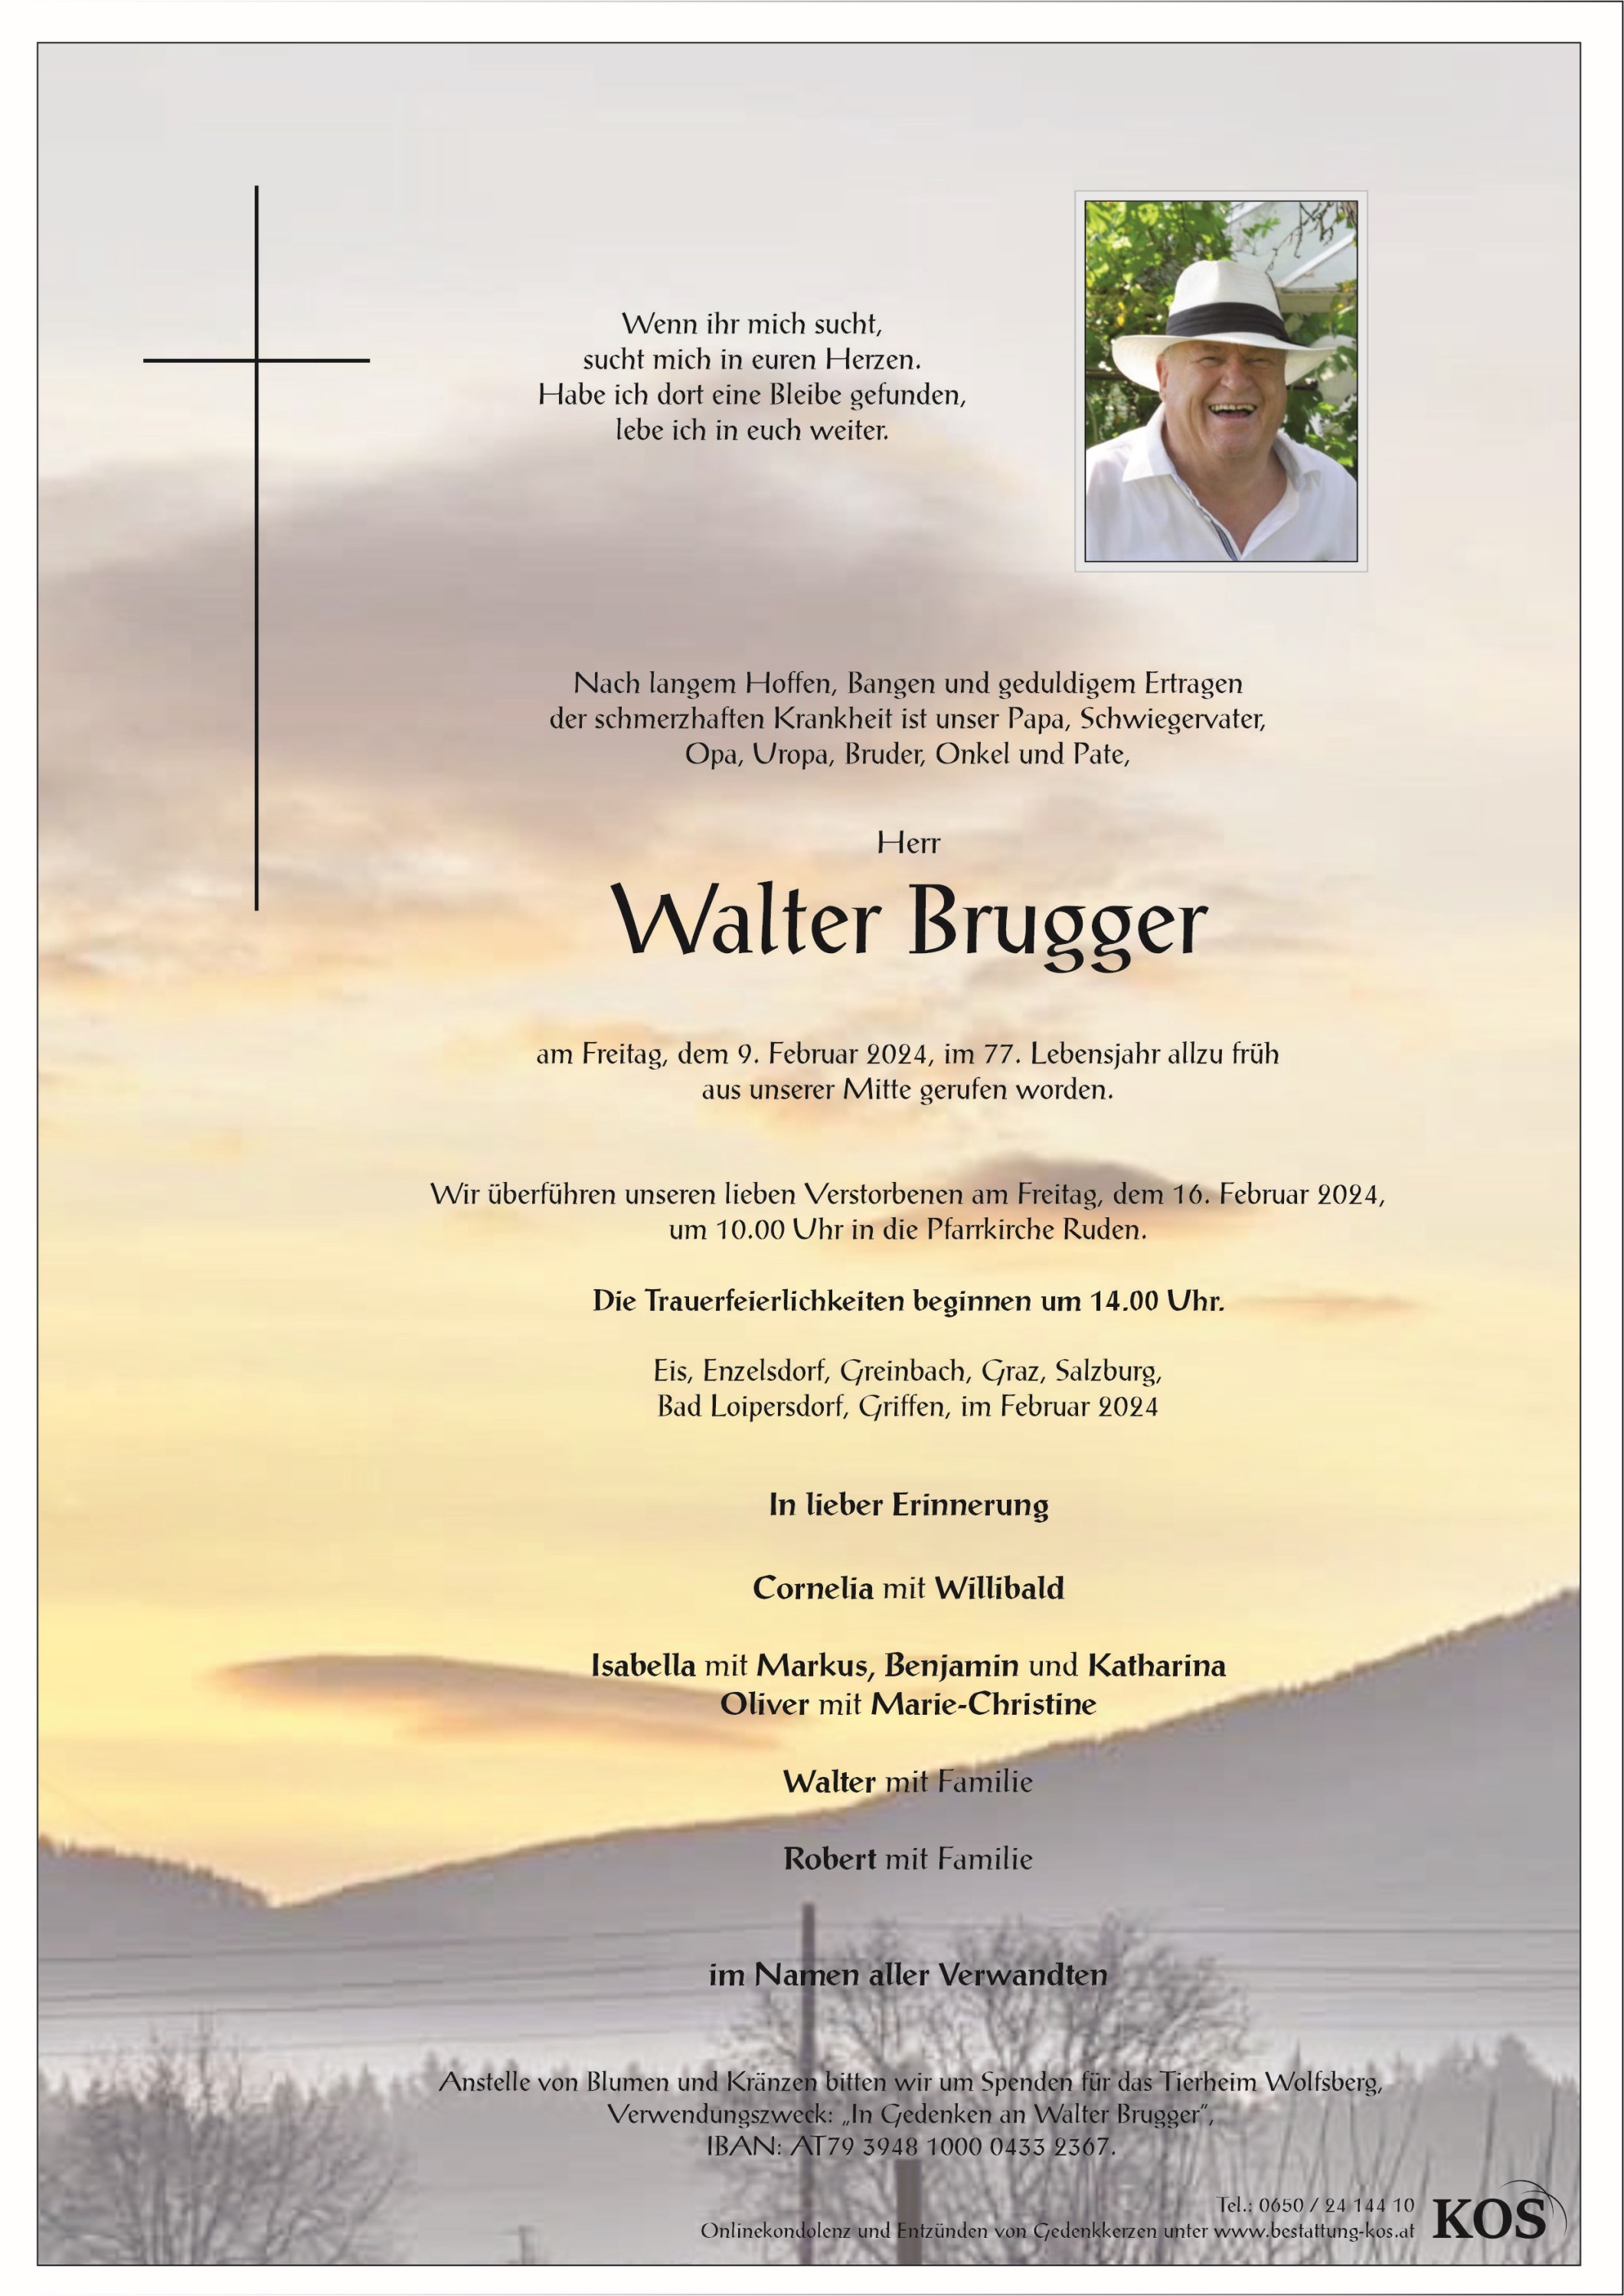 Walter Brugger